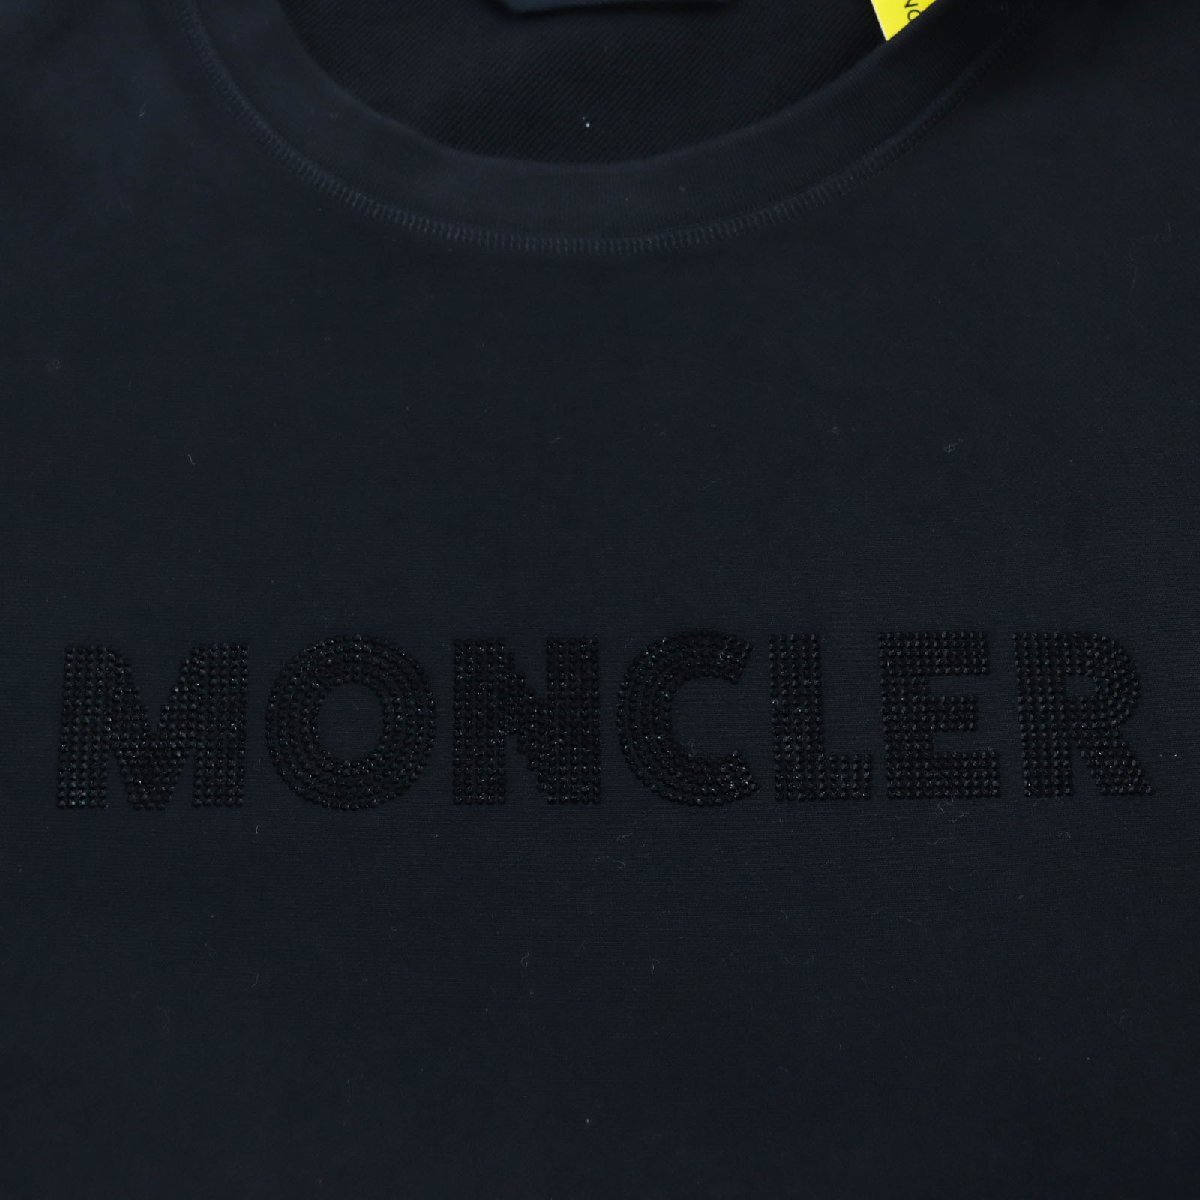 未使用品 MONCLER GENIUS 2 モンクレール ジーニアス 2 2021年製 ラインストーン ロゴワッペン 長袖 スウェット 黒 XL 正規品 メンズ_画像4